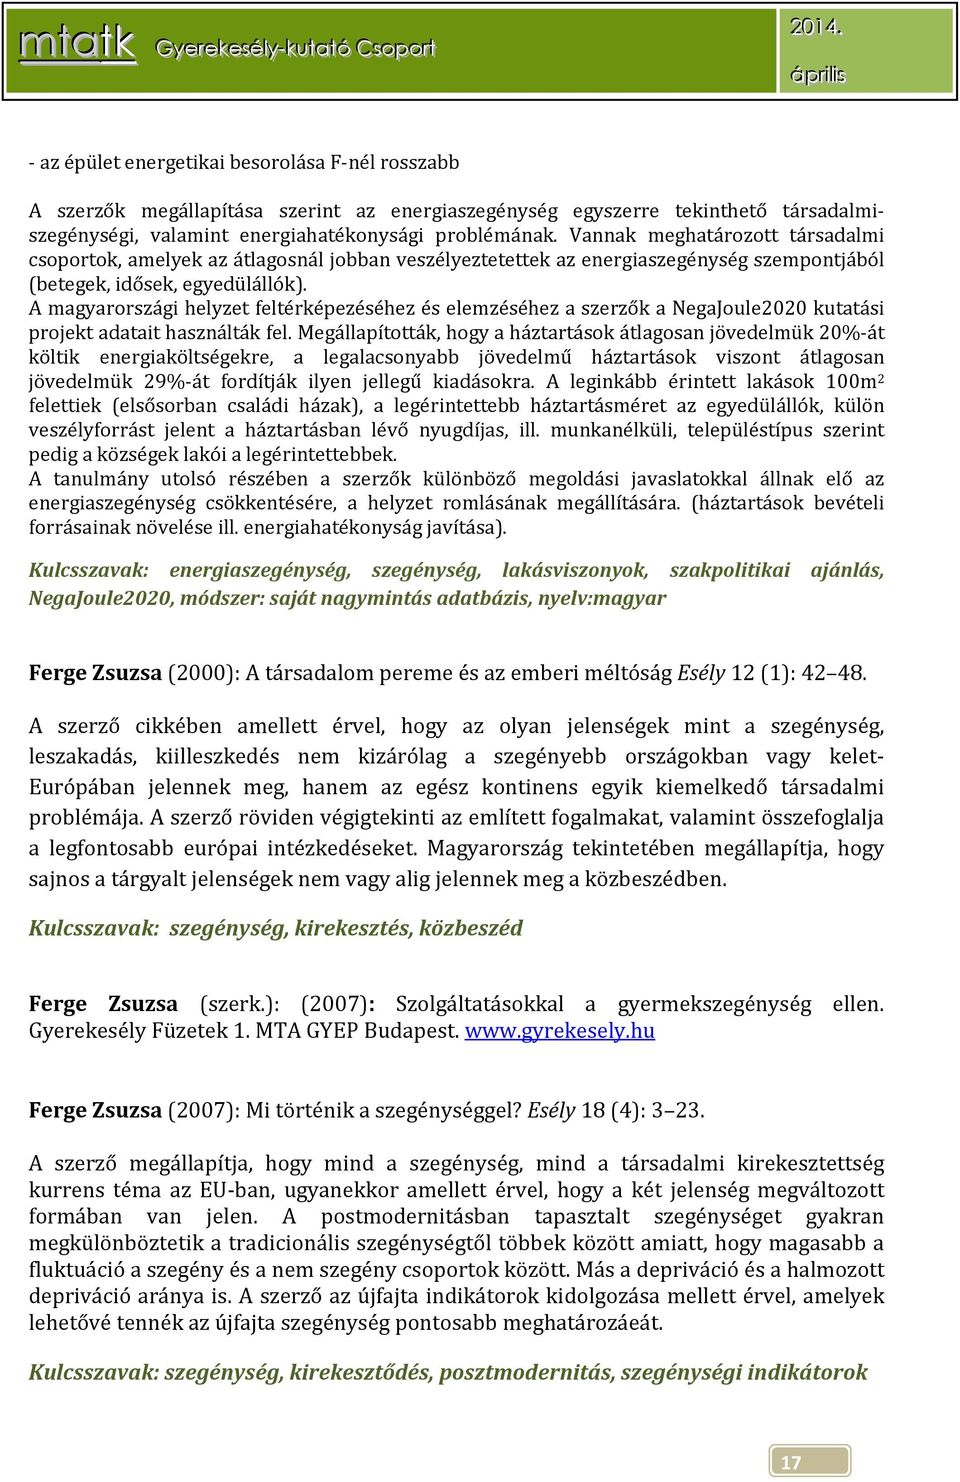 A magyarországi helyzet feltérképezéséhez és elemzéséhez a szerzők a NegaJoule2020 kutatási projekt adatait használták fel.